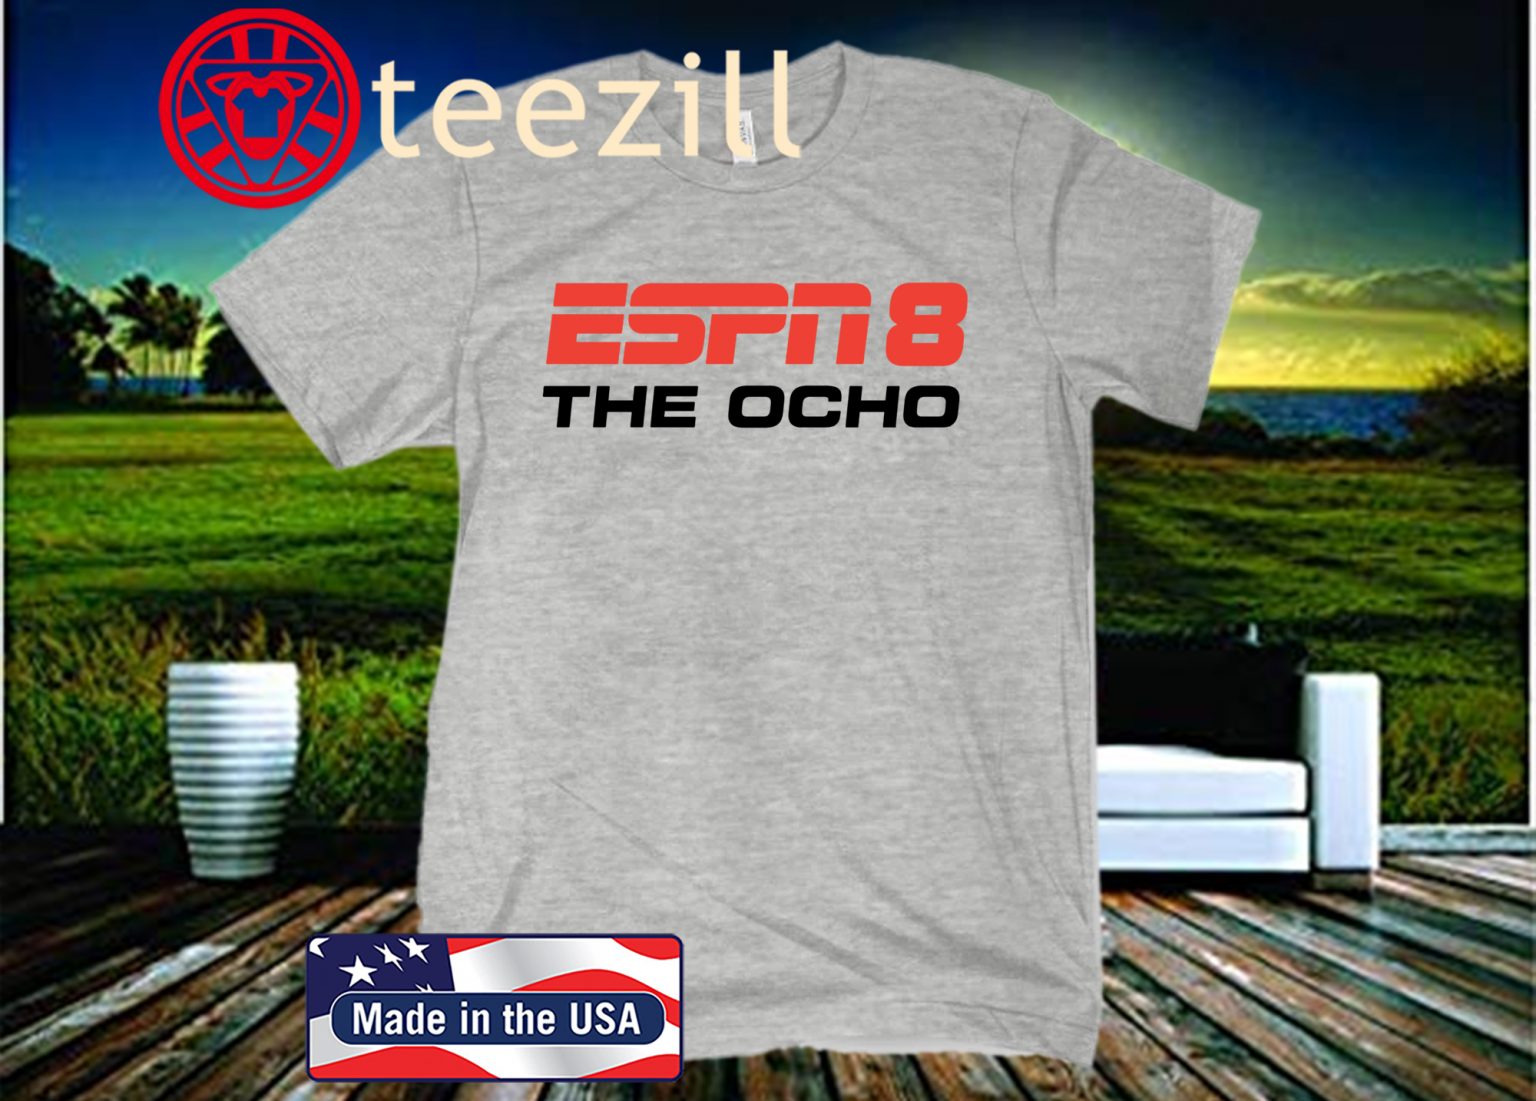 ESPN 8 The Ocho TShirt teezill